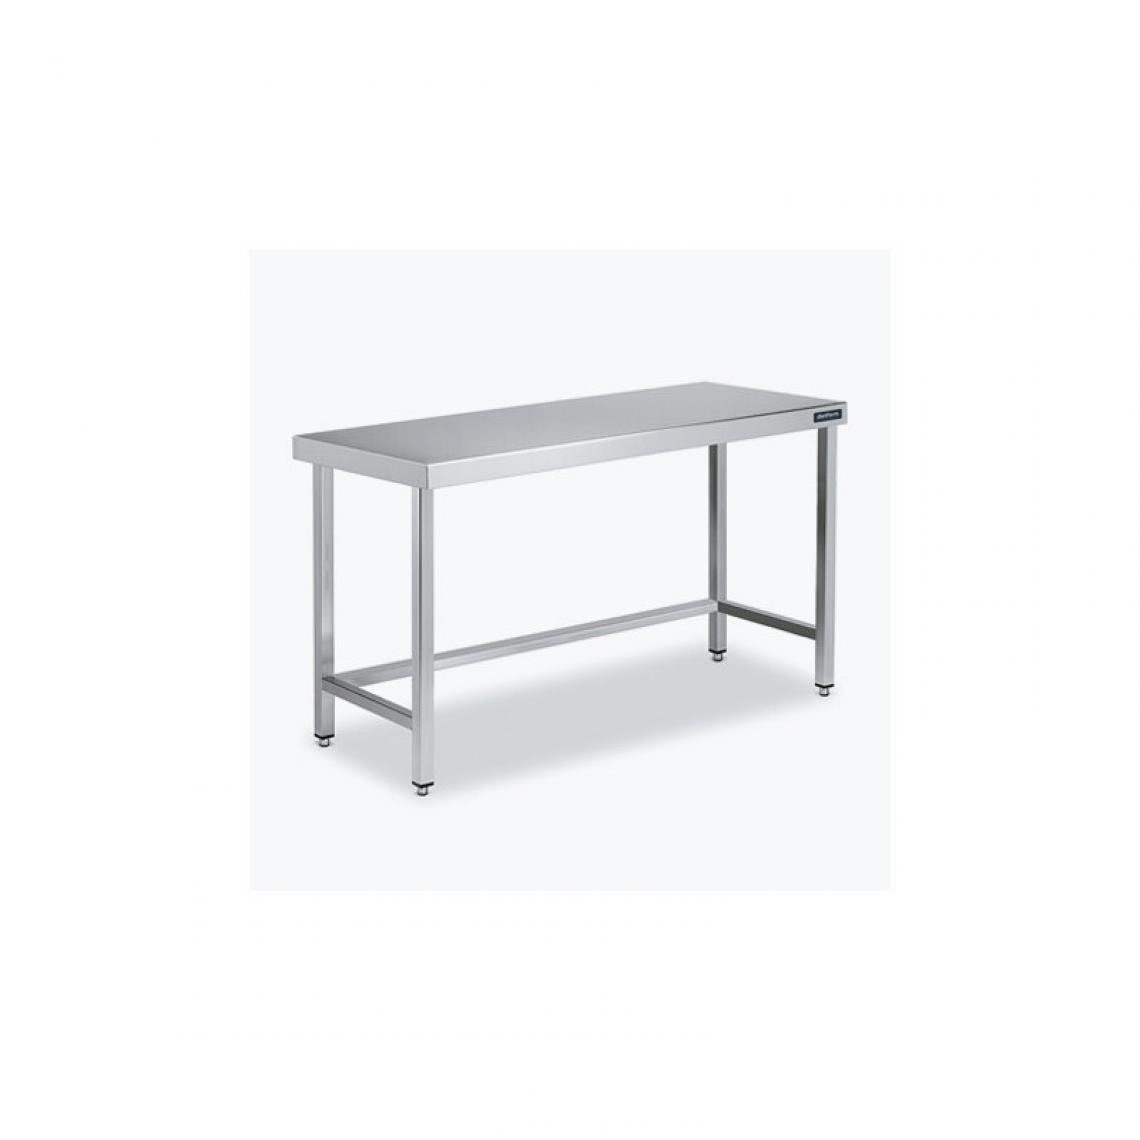 DISTFORM - Table Centrale 600x600X600 avec Renforts - Distform - Inox 18/101300x600x600mm - Tables à manger